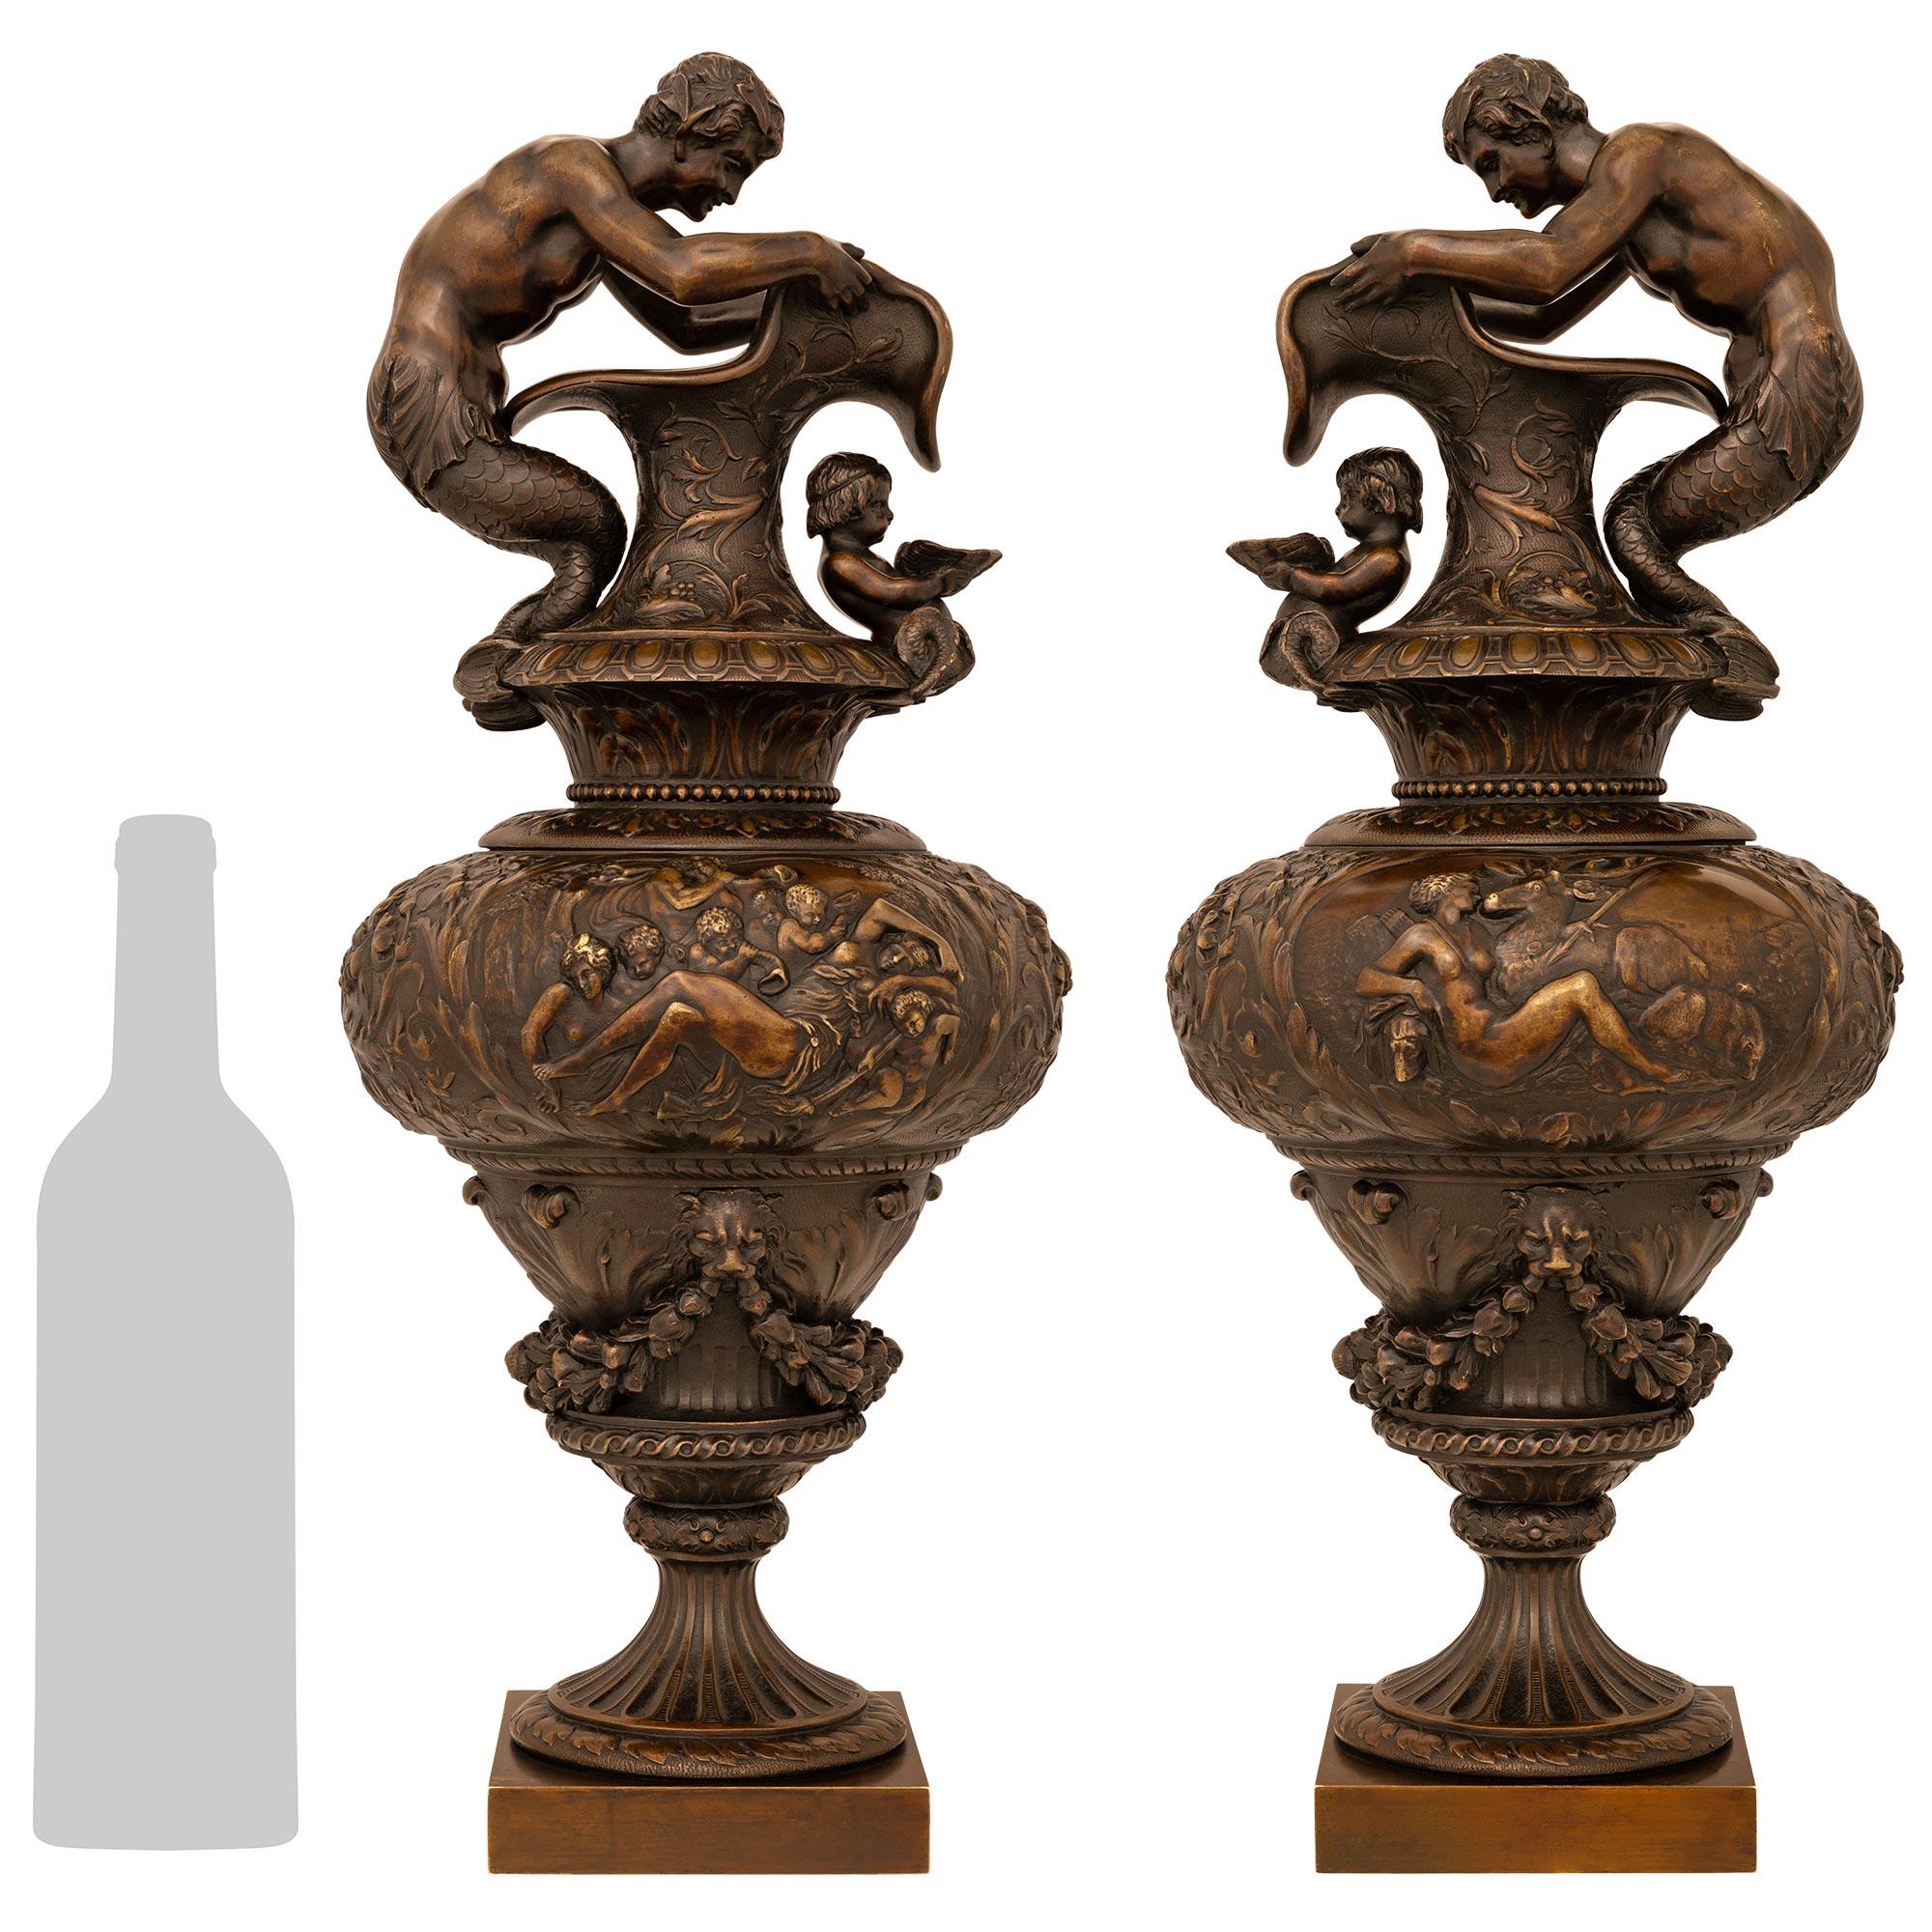 Une superbe paire d'aiguières/urnes en bronze patiné de la Renaissance française du XIXe siècle. Chaque aiguière est surmontée d'une base carrée sous un socle cannelé décoré d'un bandeau de feuillage au centre et d'un bandeau en spirale au-dessus.